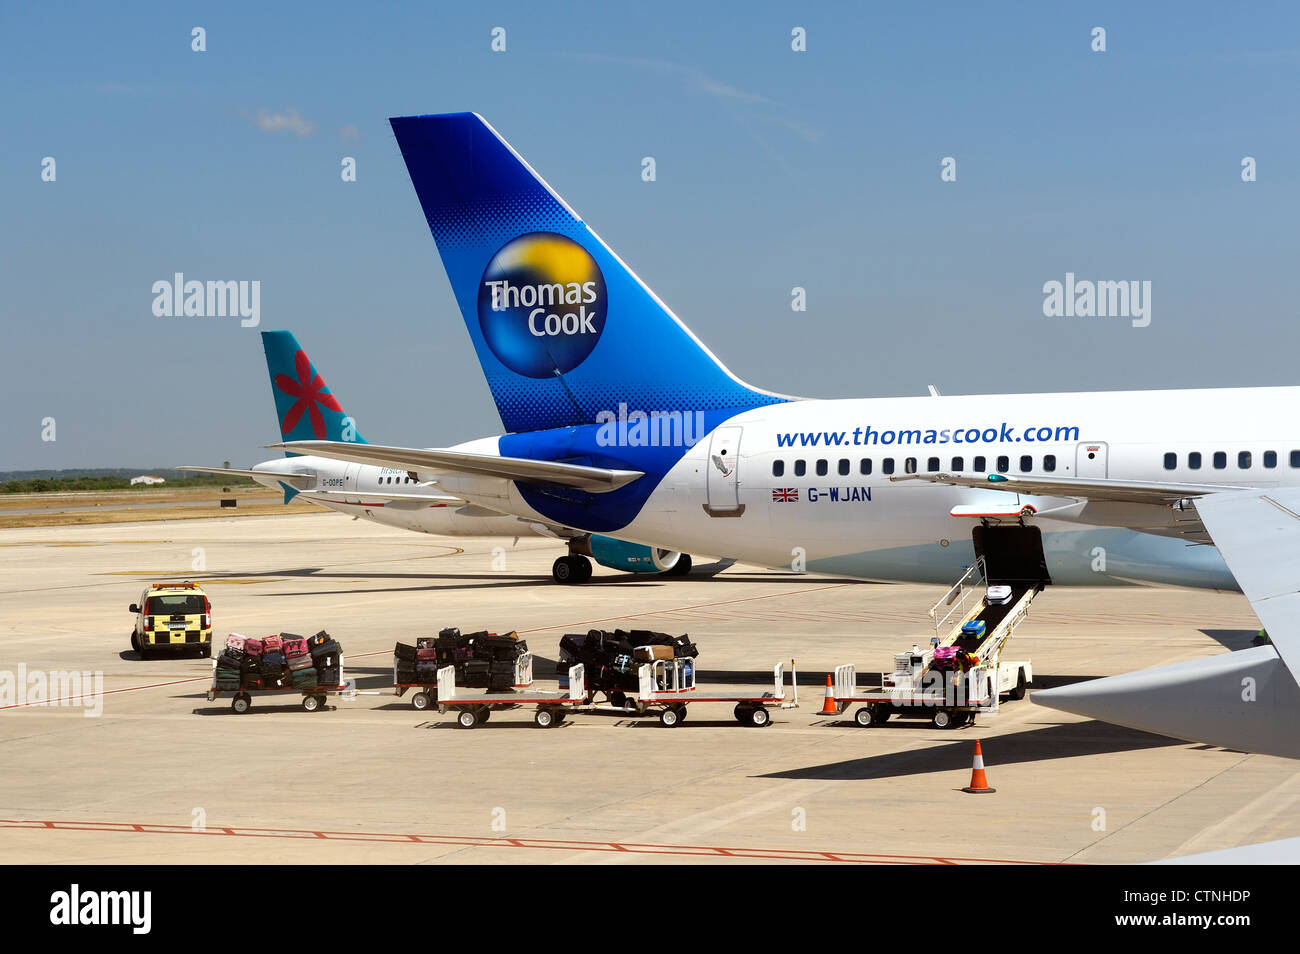 Bagagli dei passeggeri vengono caricate su thomas cook.com airbus Boeing 757-200 Mahon Minorca spagna Foto Stock